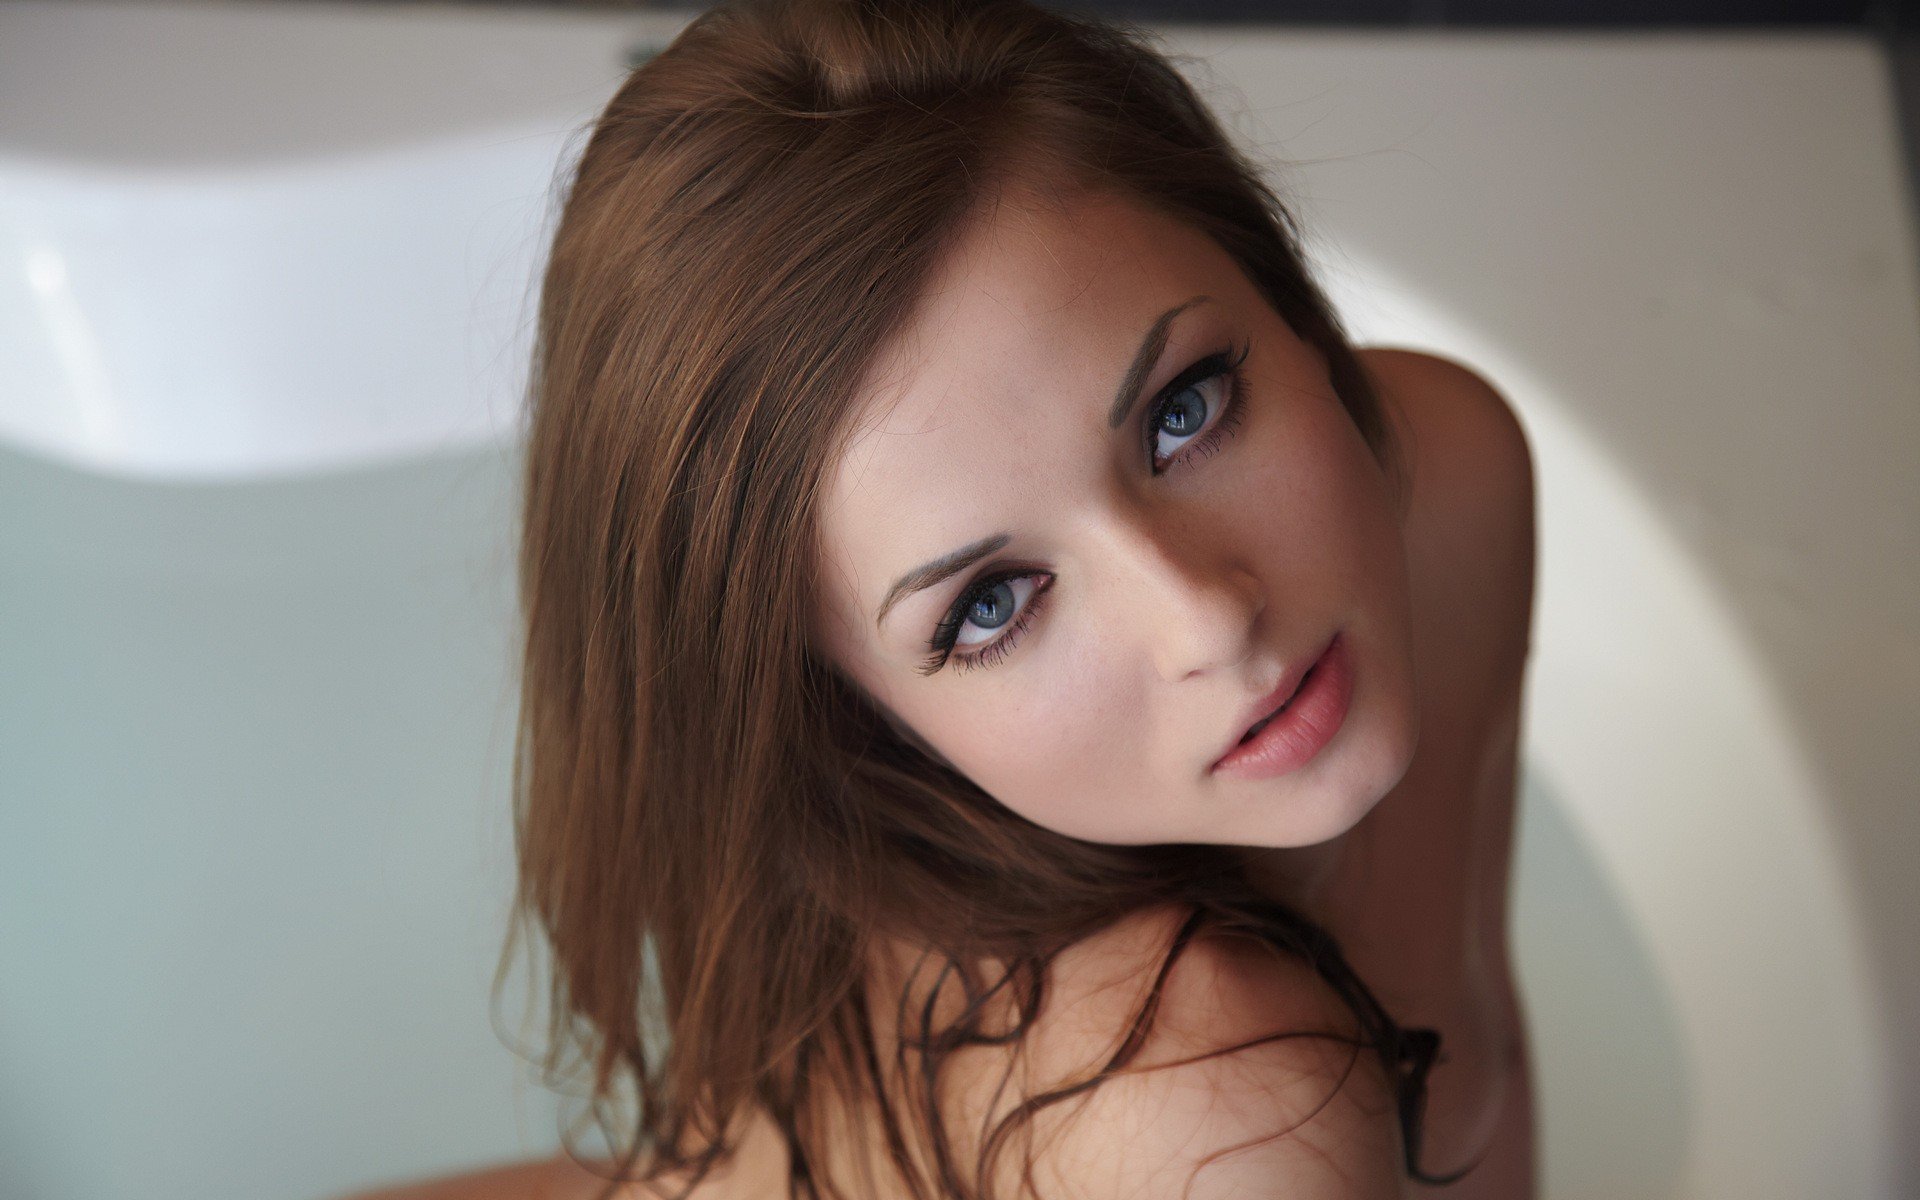 Прелестная дева с красивыми глазами и милой улыбкой принимает ванну